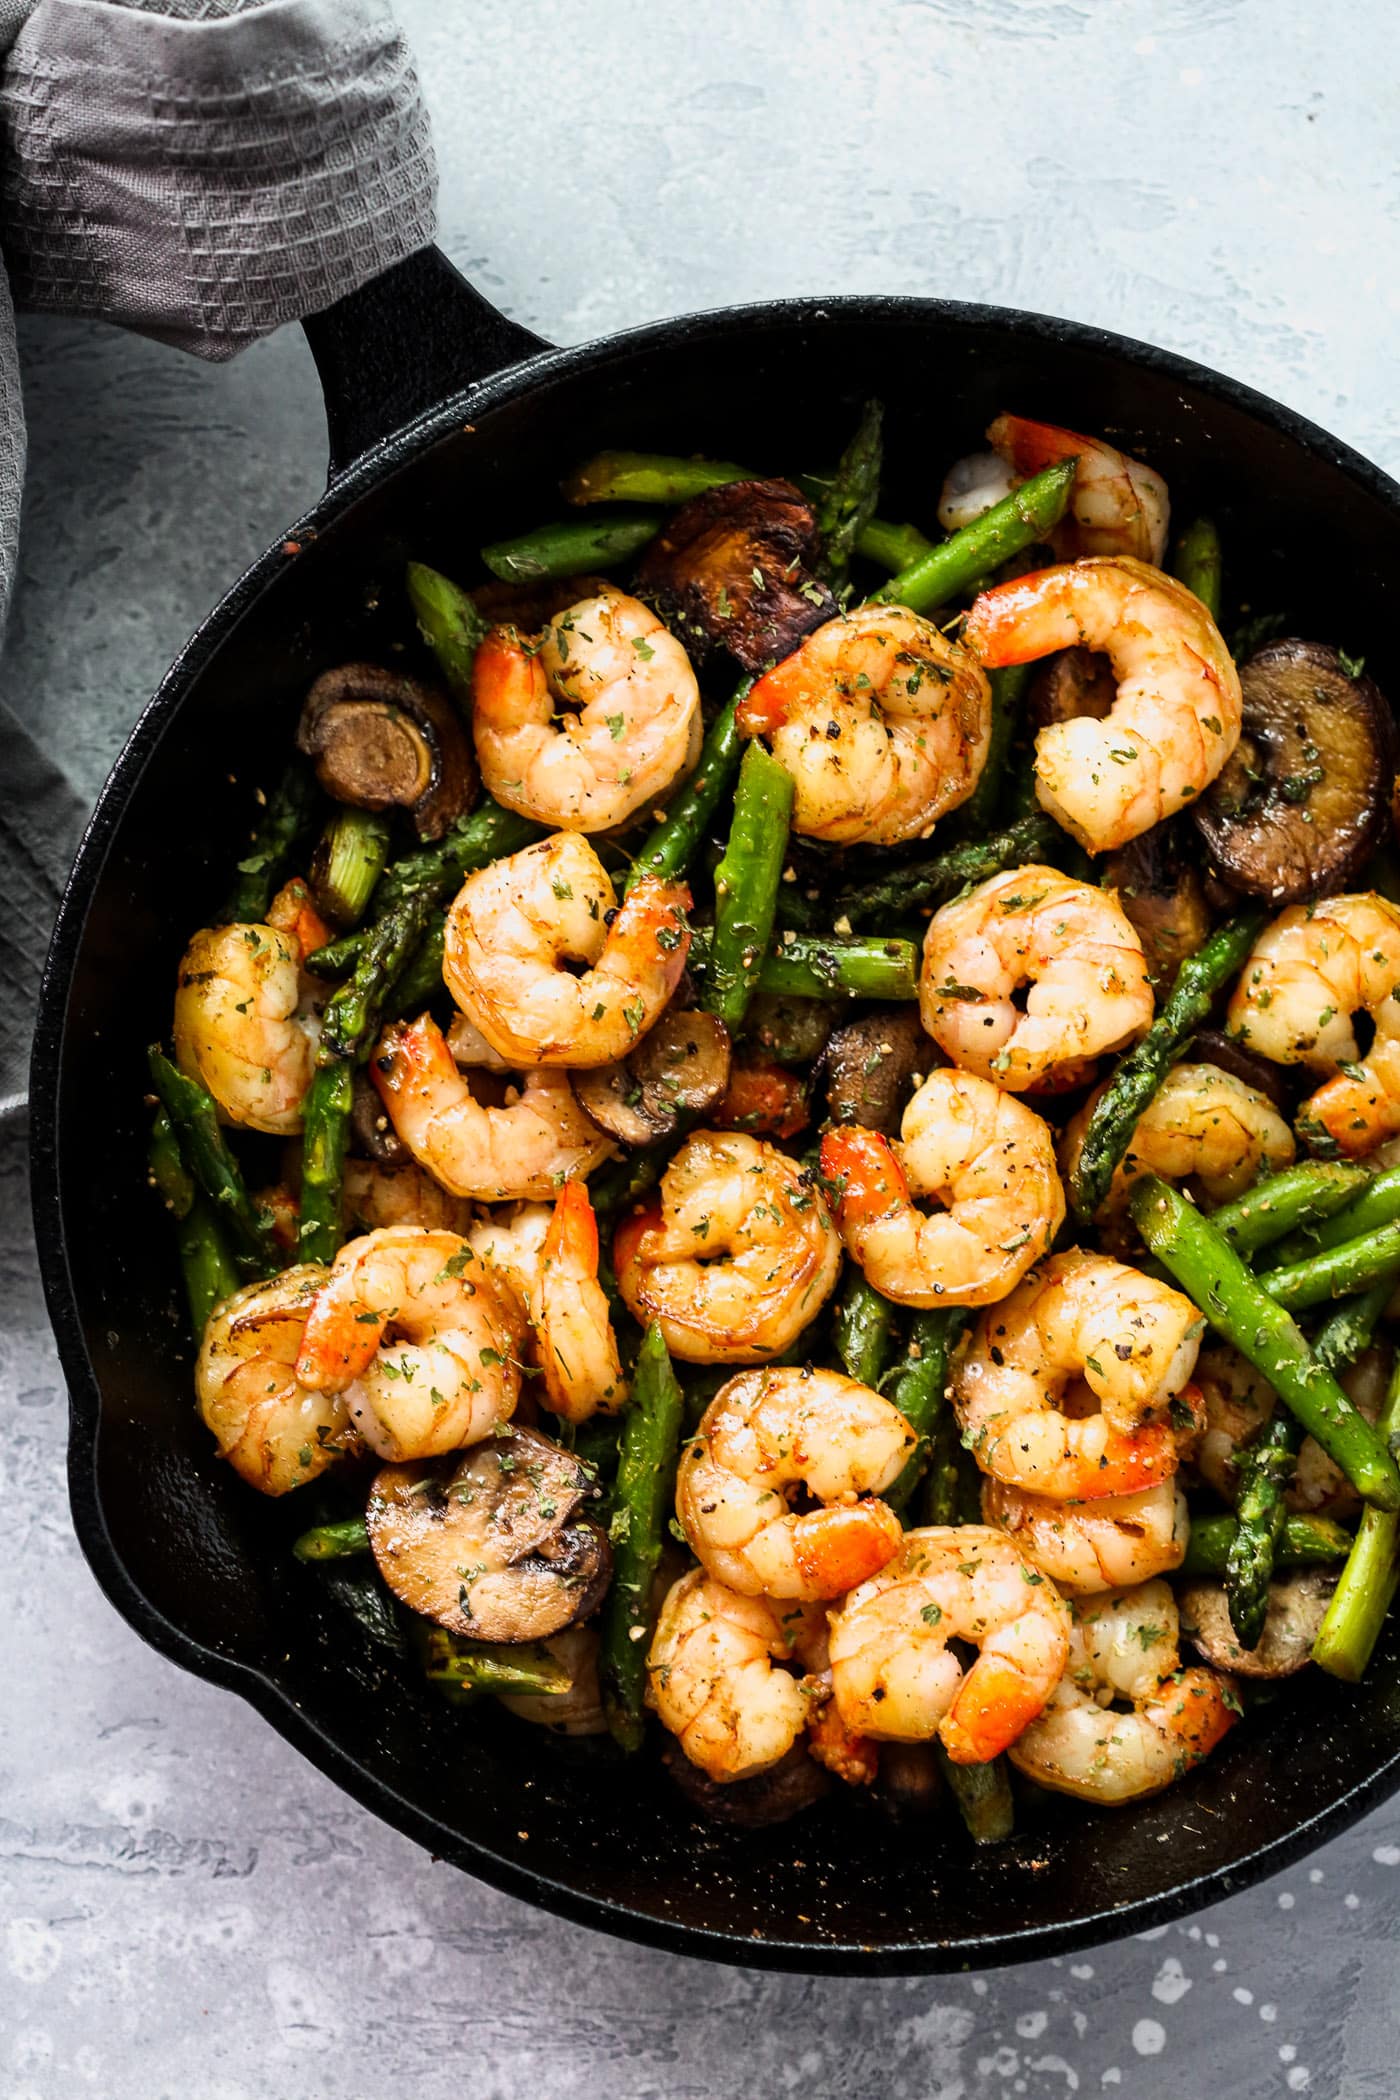 Shrimp Dinner Recipes - overhead view of a cast iron skillet containing shrimp, asparagus and mushrooms